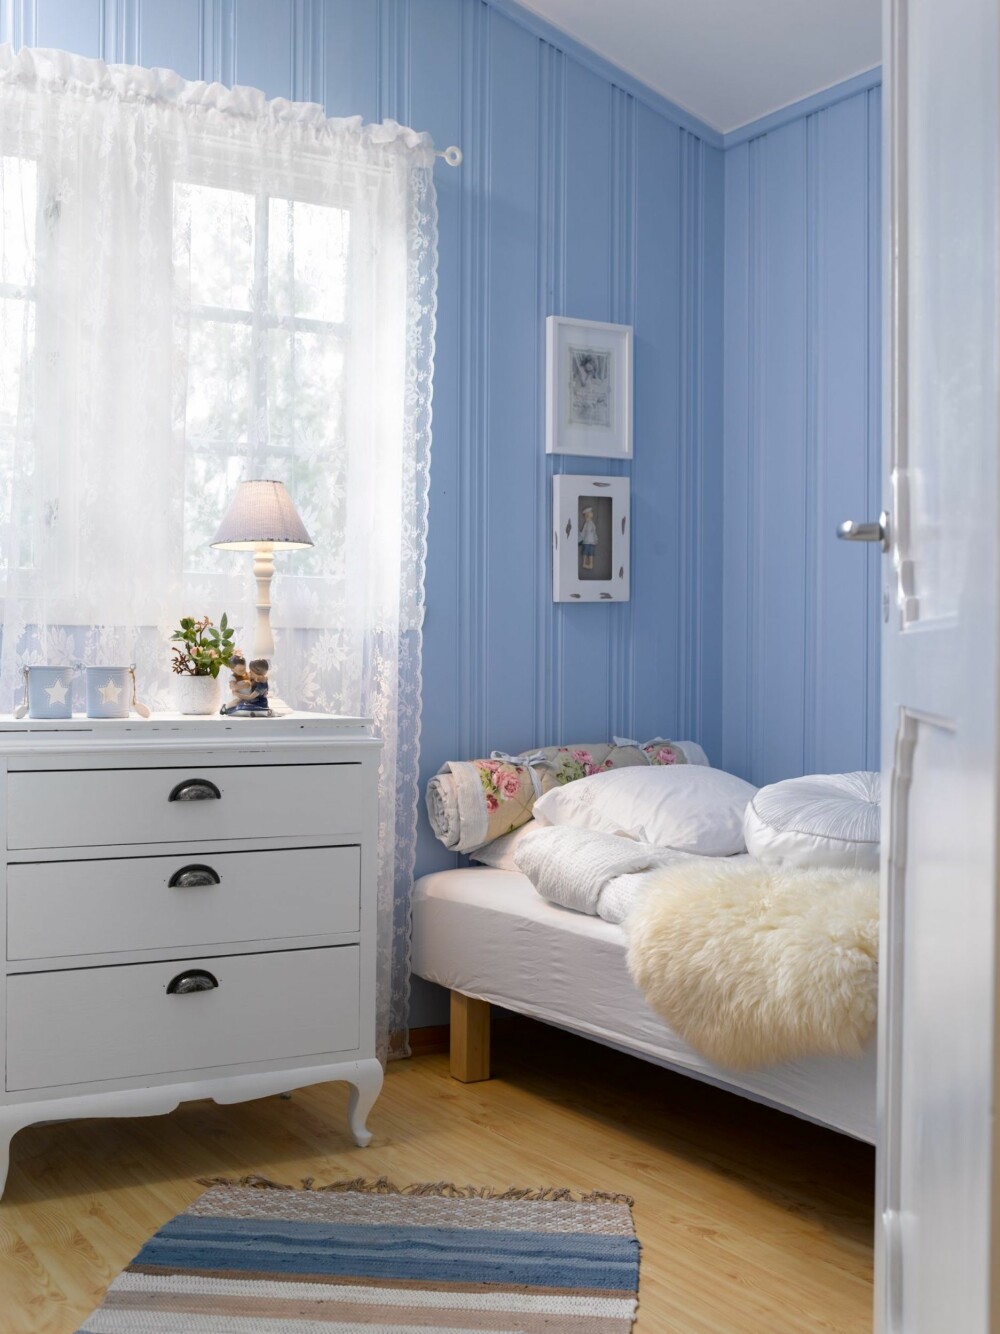 BABYBLÅTT: Blått kommer i mange nyanser. Lyseblått virker svalt og avslappende på soverommet.